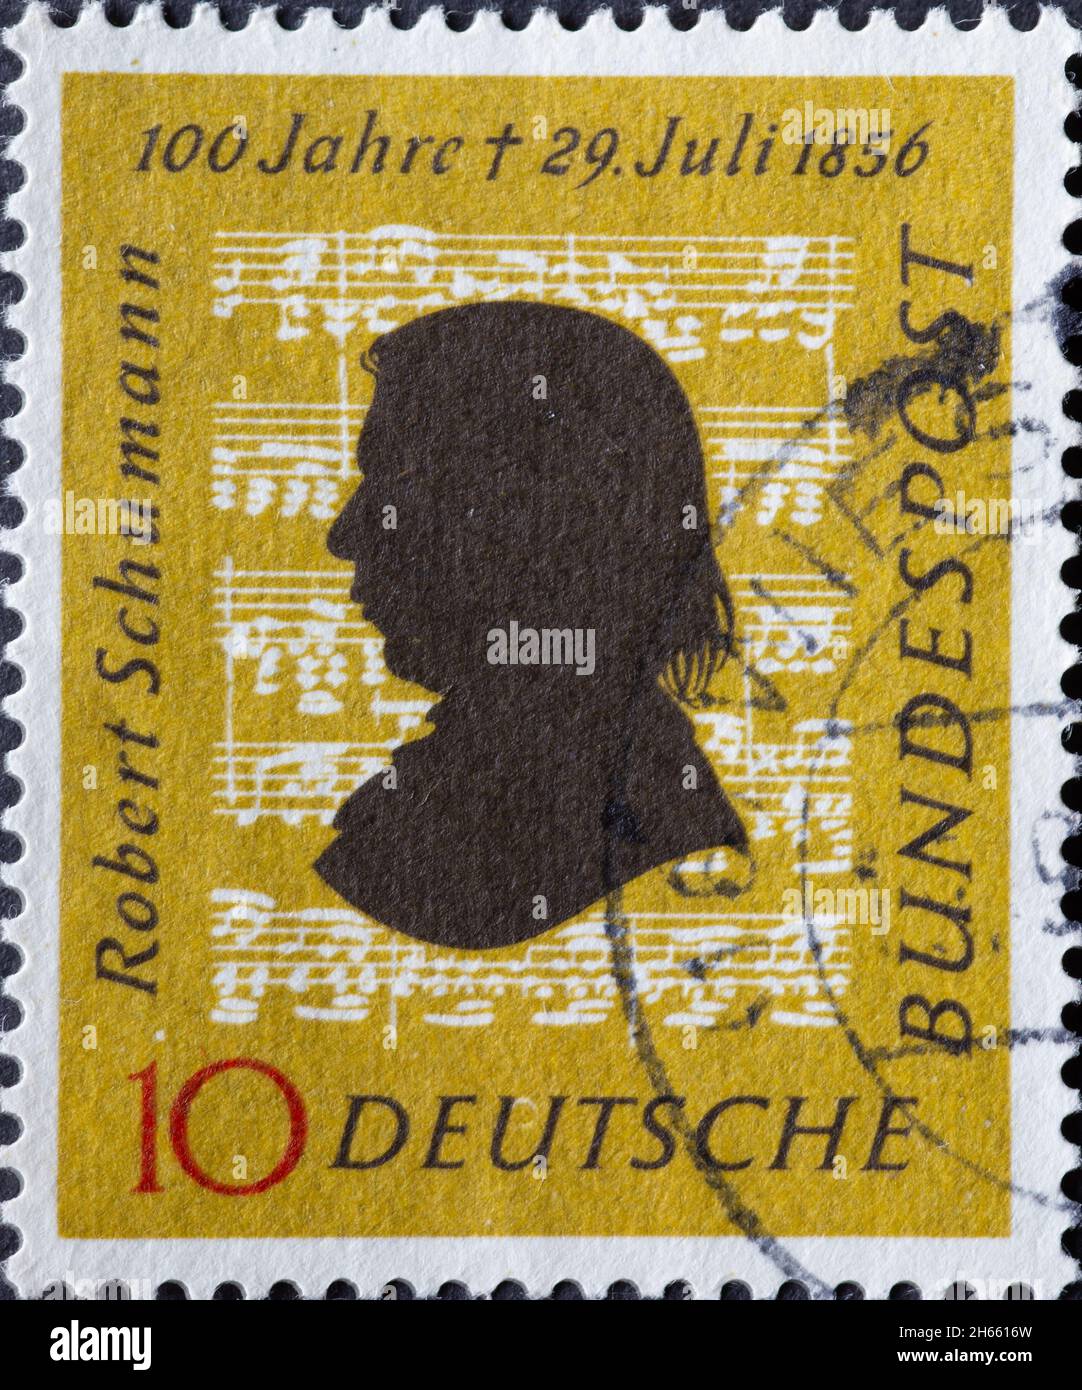 ALLEMAGNE - VERS 1956: Ce timbre-poste en jaune ocre montre le portrait du compositeur Robert Schumann sur fond de notes musicales. t Banque D'Images